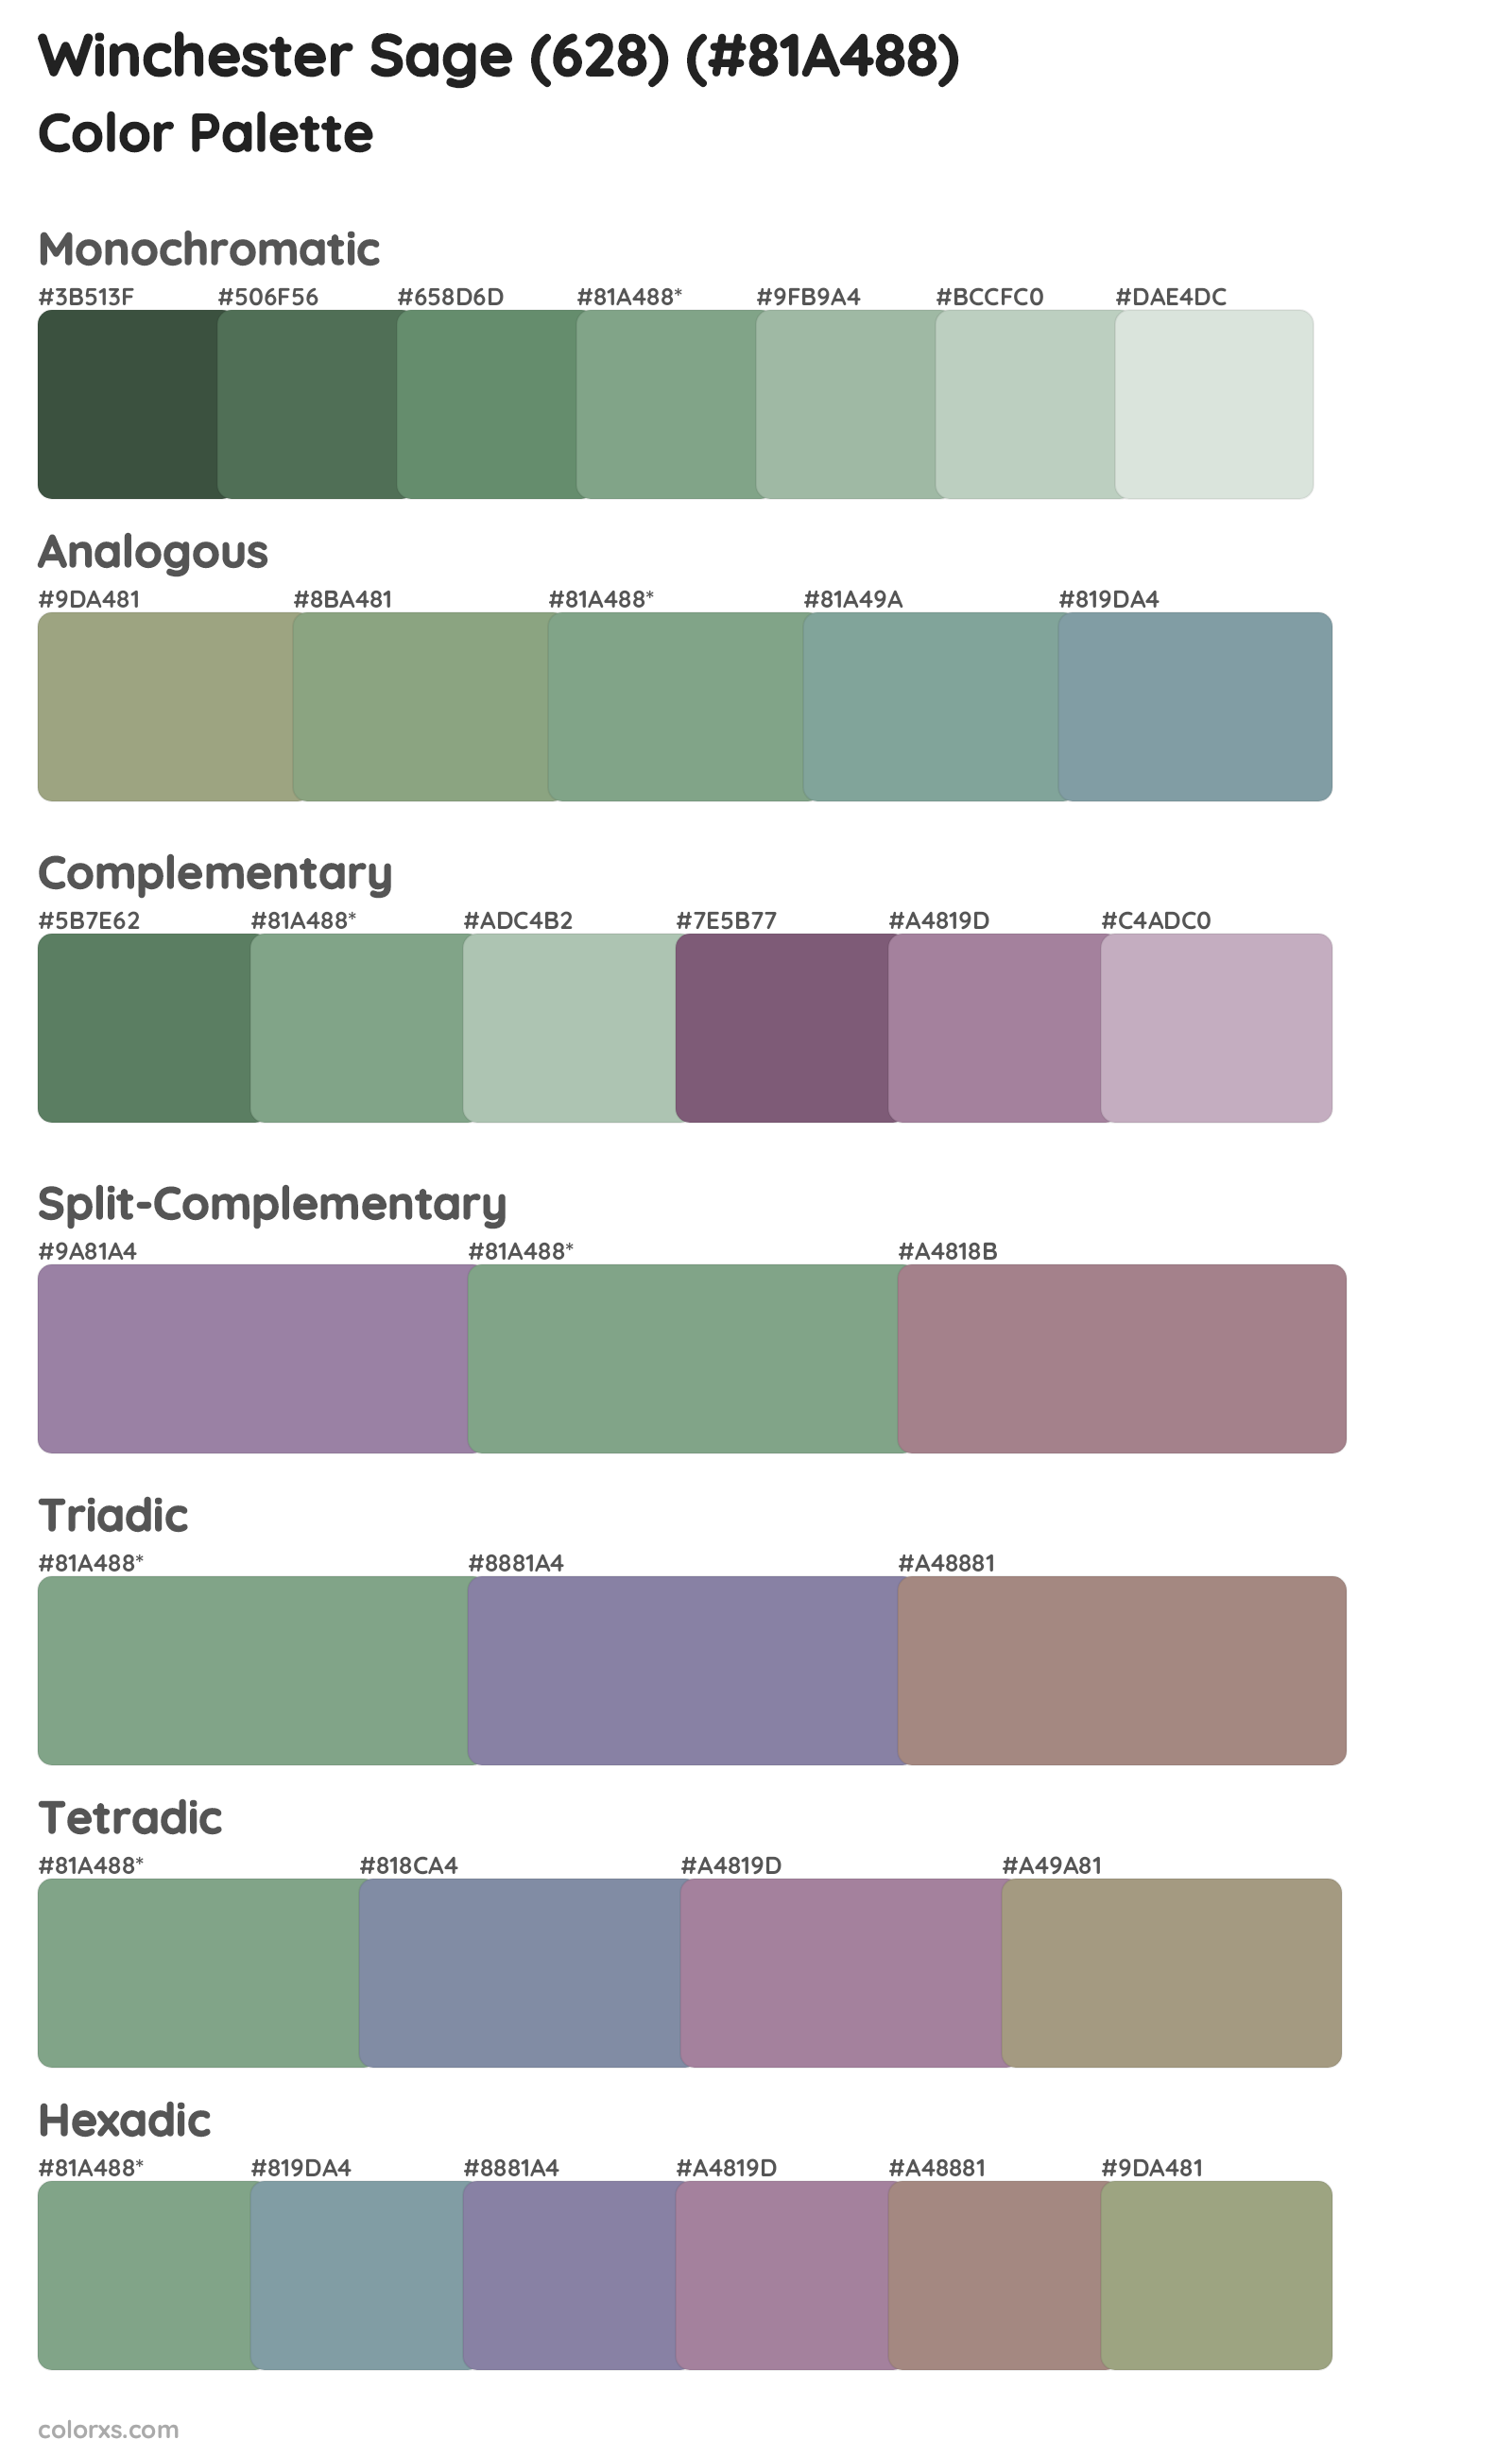 Winchester Sage (628) Color Scheme Palettes